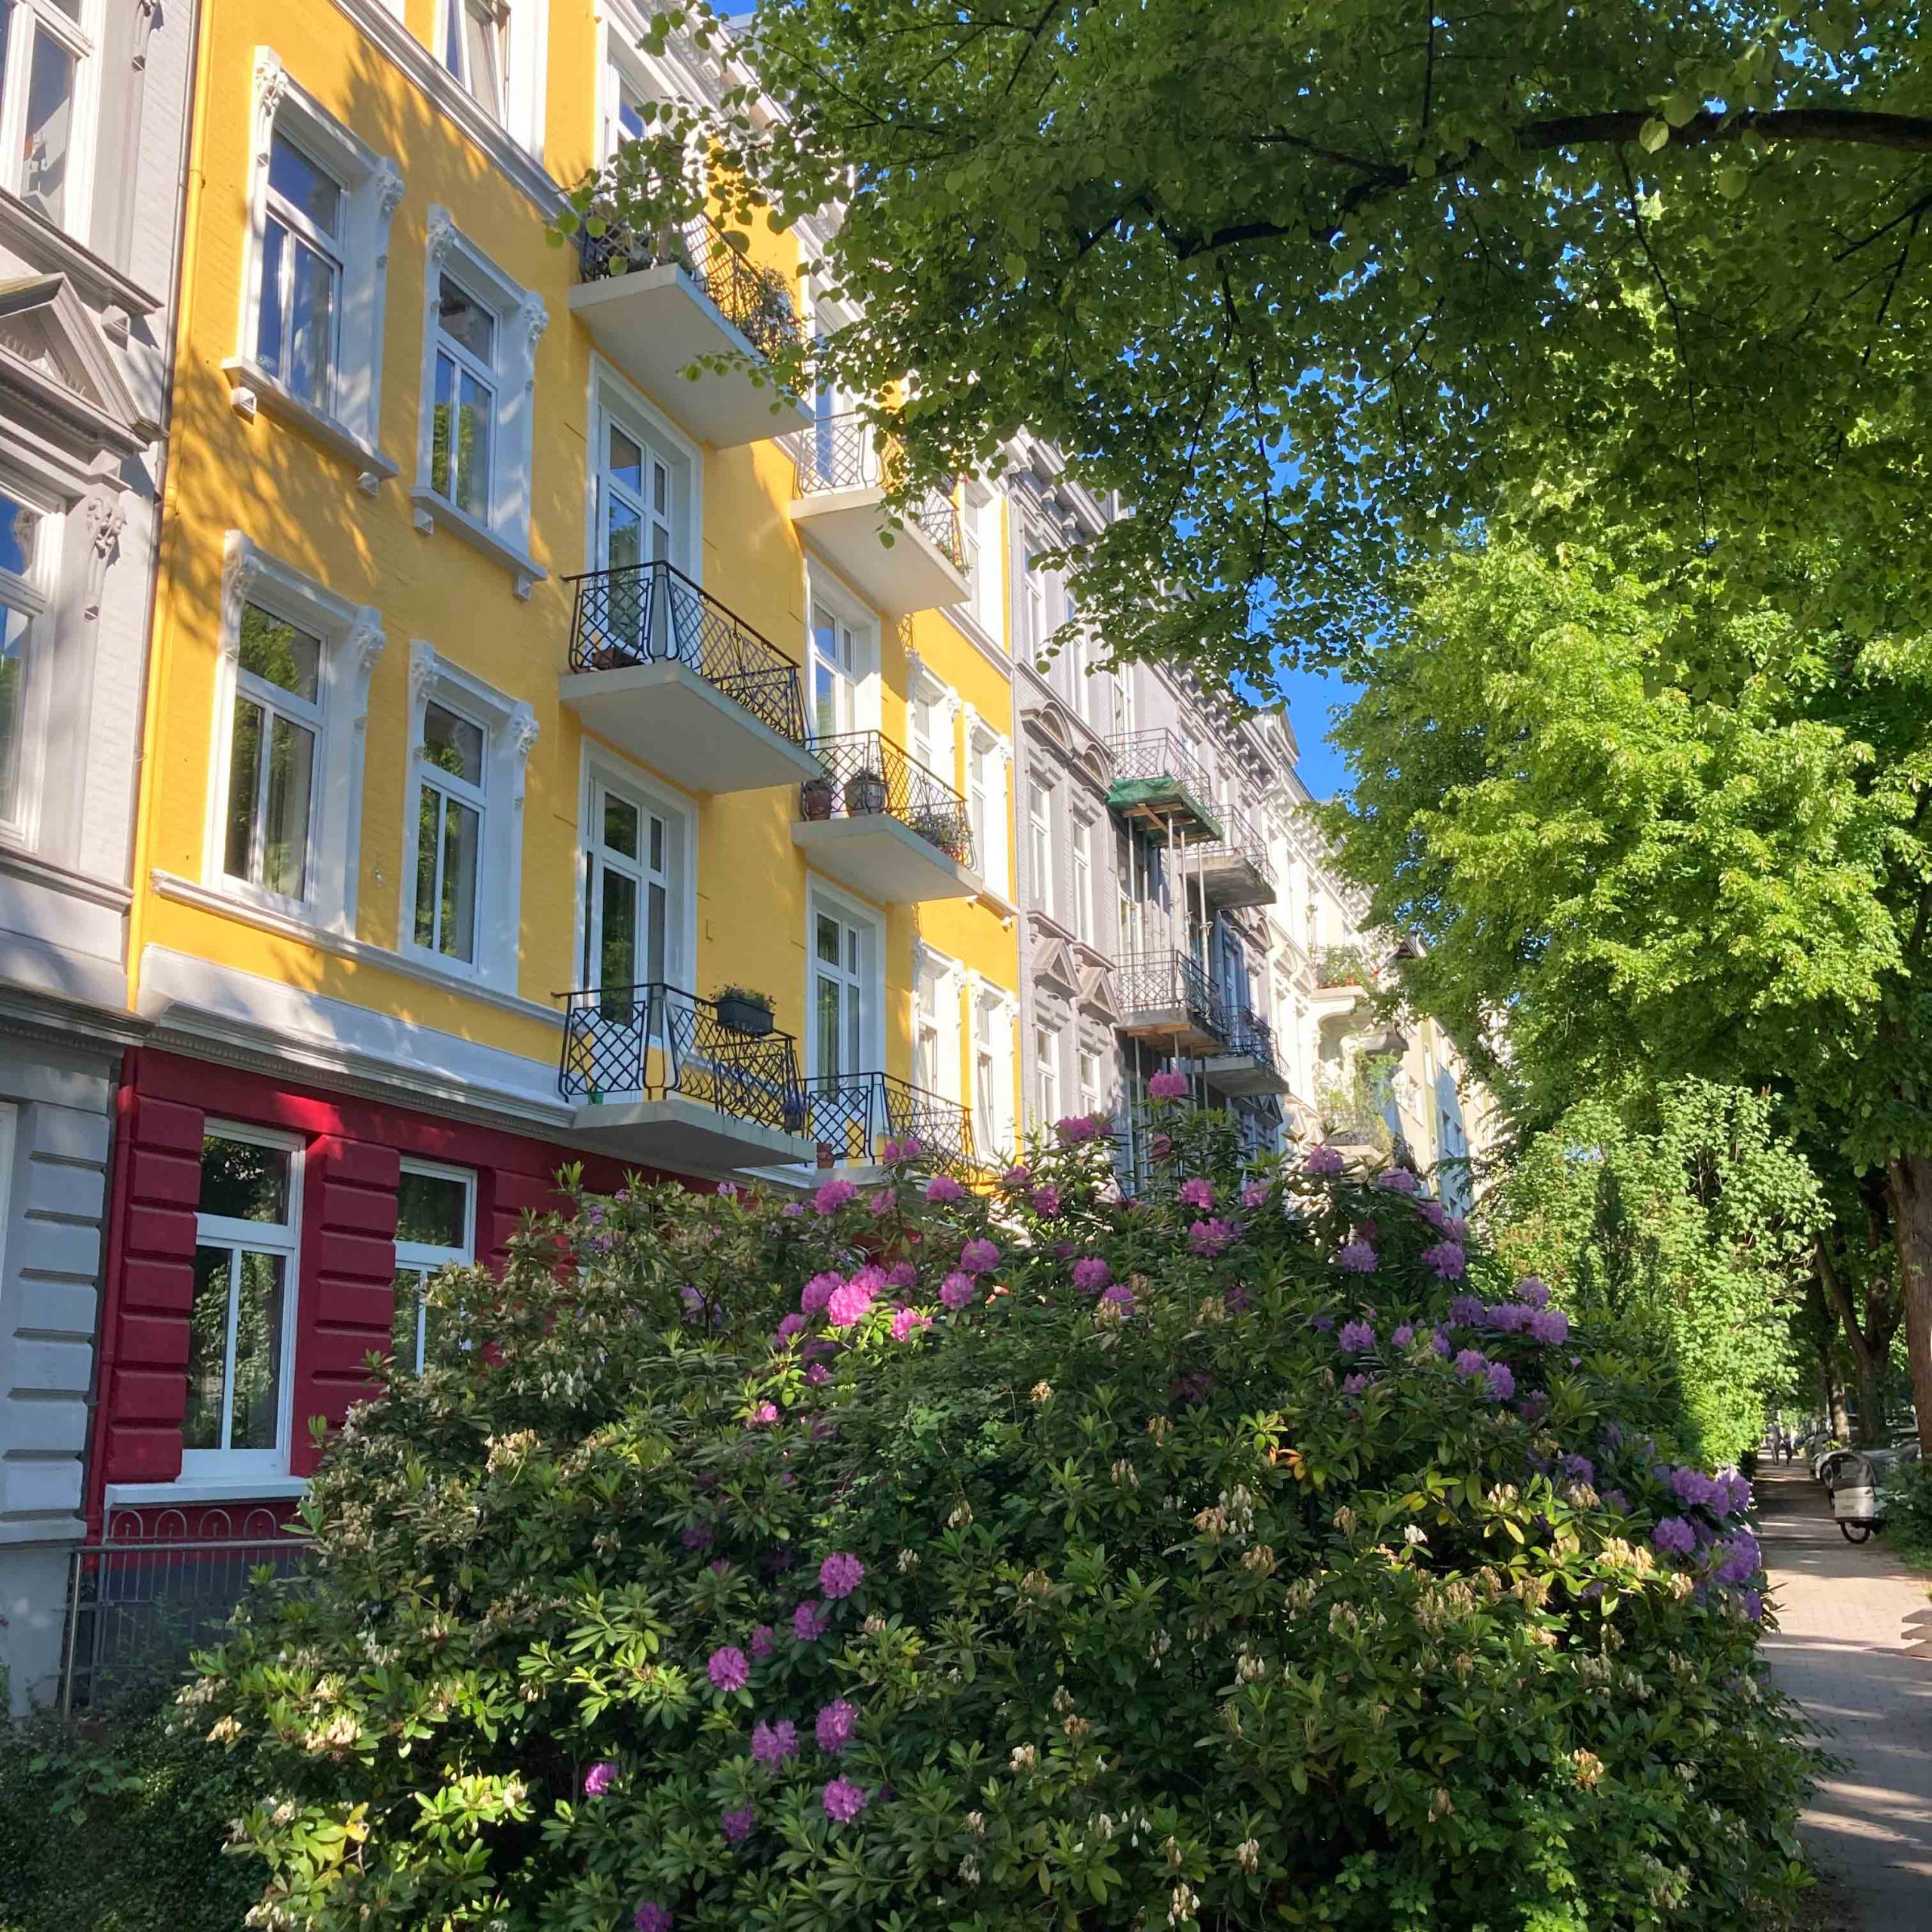 Bunte Häuser und Rhododendren-Büsche in Eimsbüttel